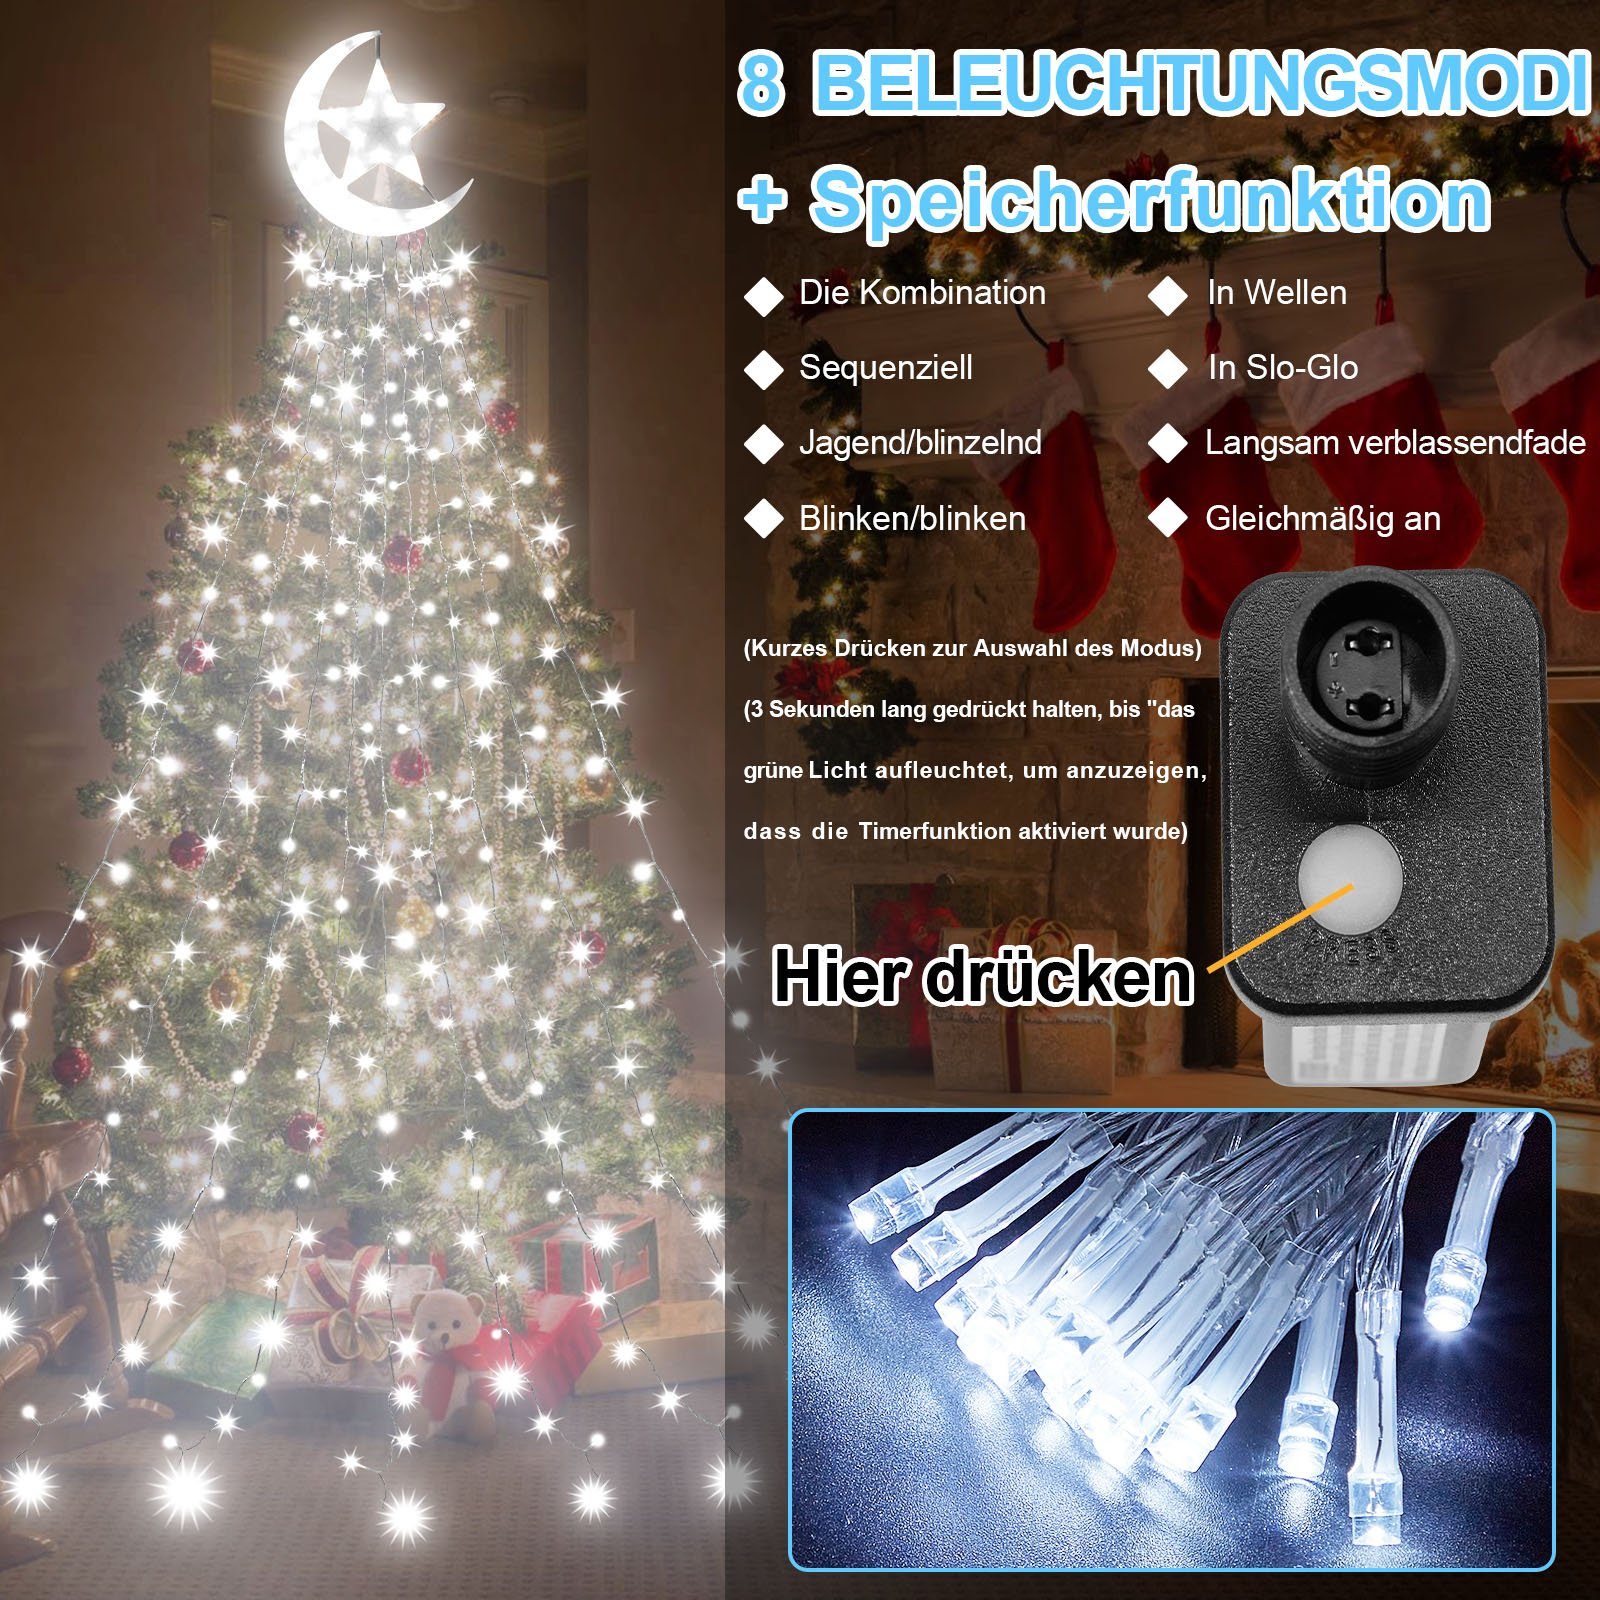 Rosnek LED-Lichtervorhang 8 Modi, Dach Mondstern,Speicherfunktion 350-flammig, mit Lichter; Weiß Innenhof wasserdicht, für Ramadan Timer;Wasserfall Baum Weihnachtsdeko, Topper